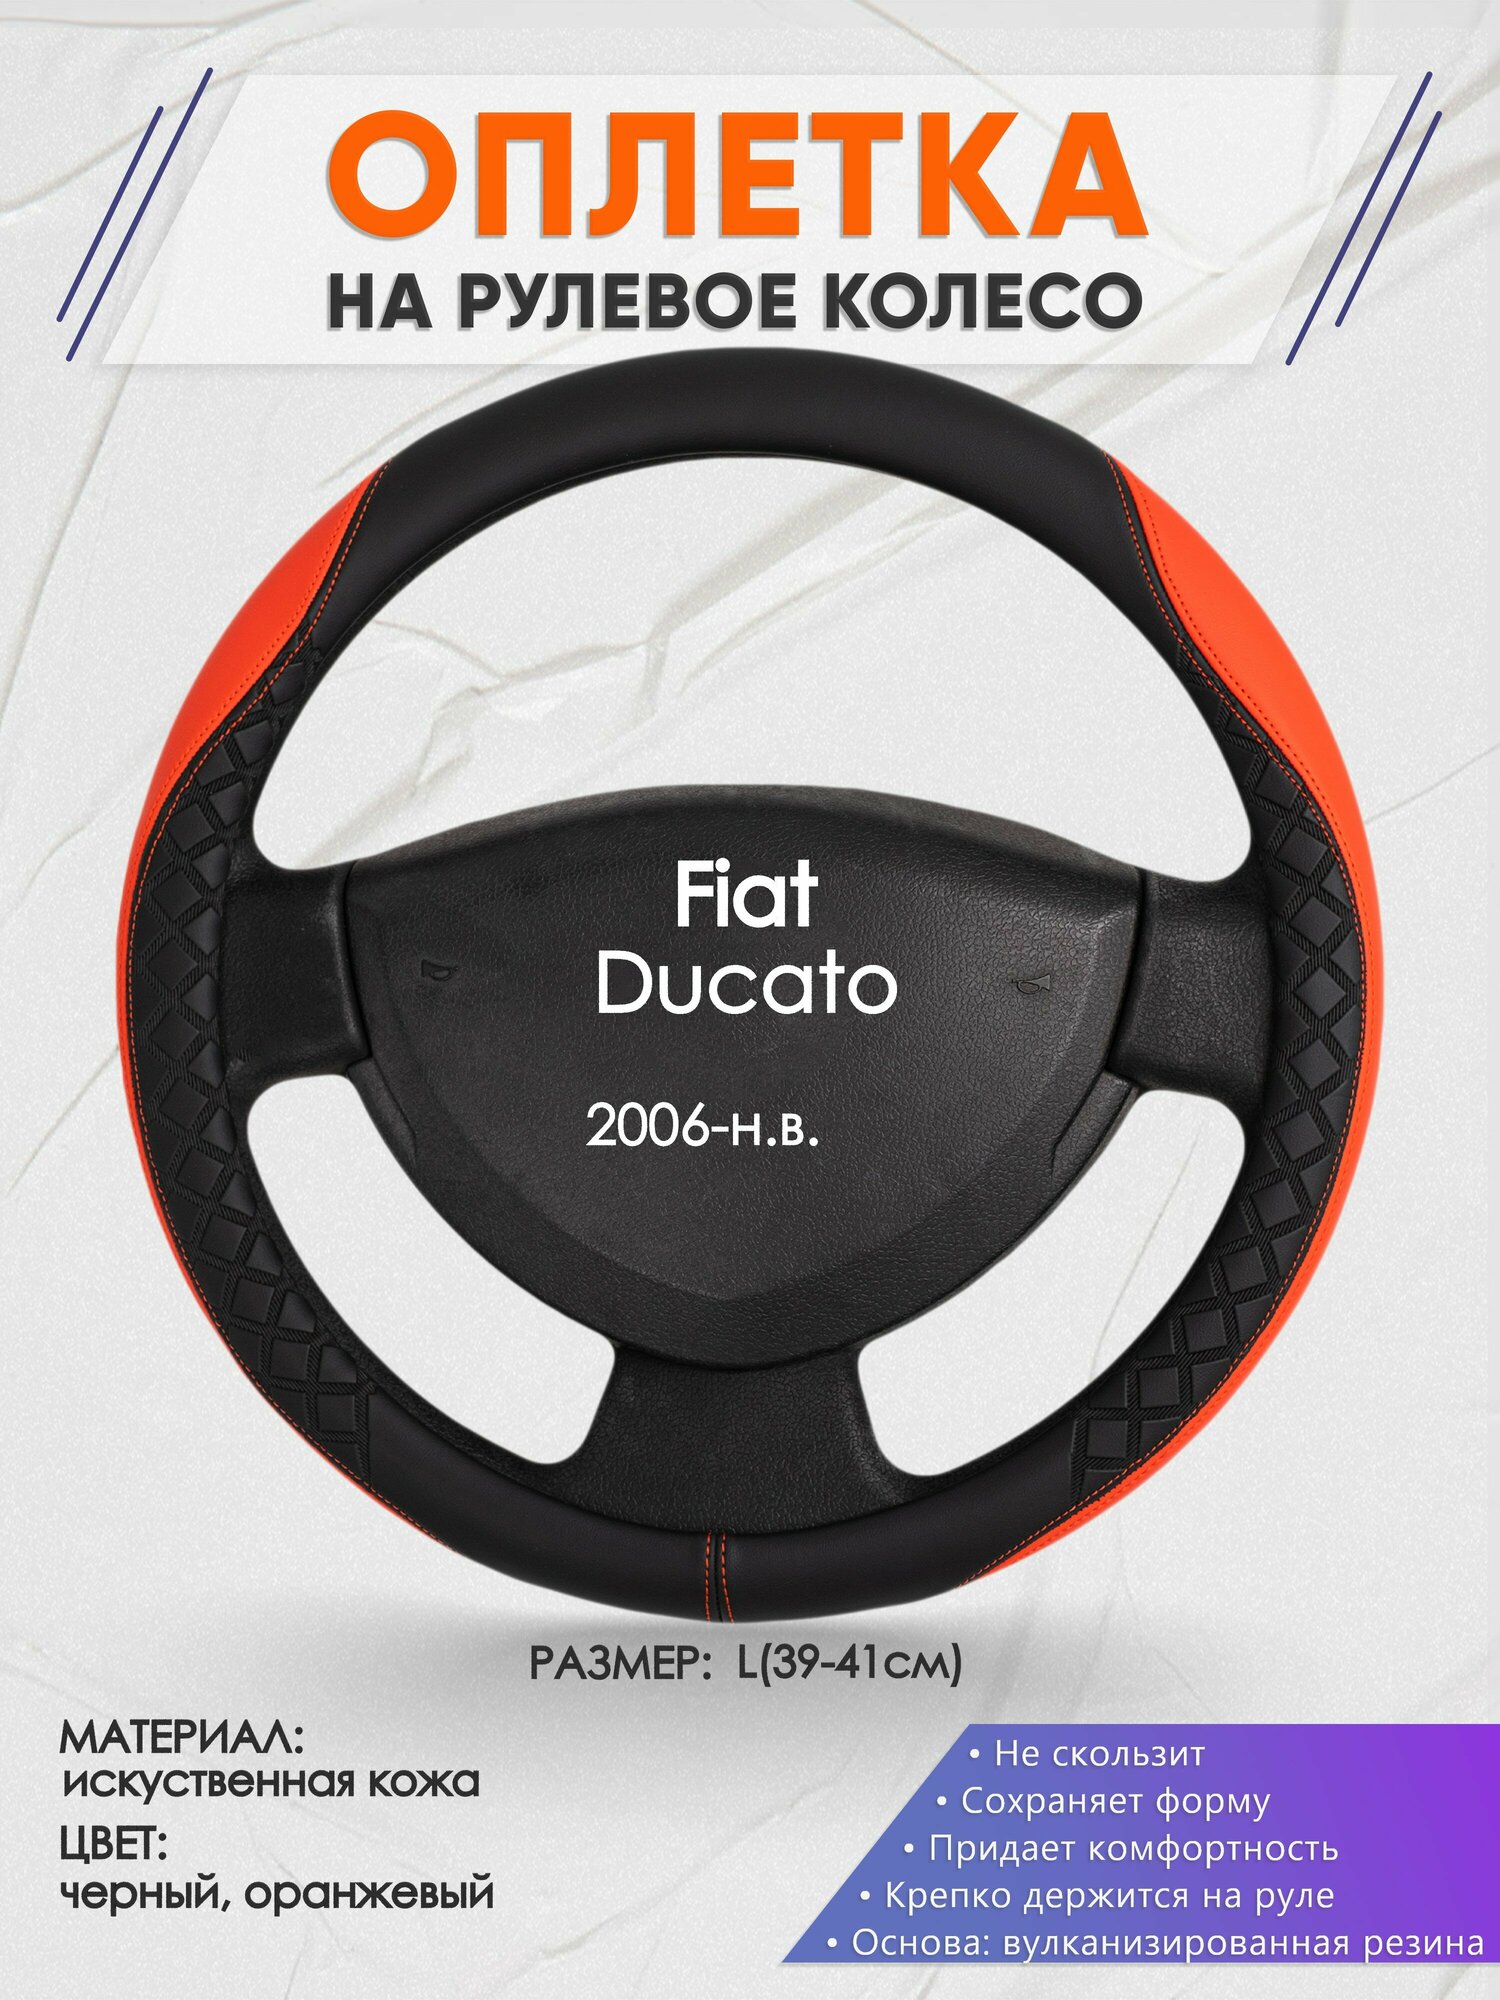 Оплетка на руль для Fiat Ducato (Фиат Дукато) 2006-н. в, L(39-41см), Искусственная кожа 08